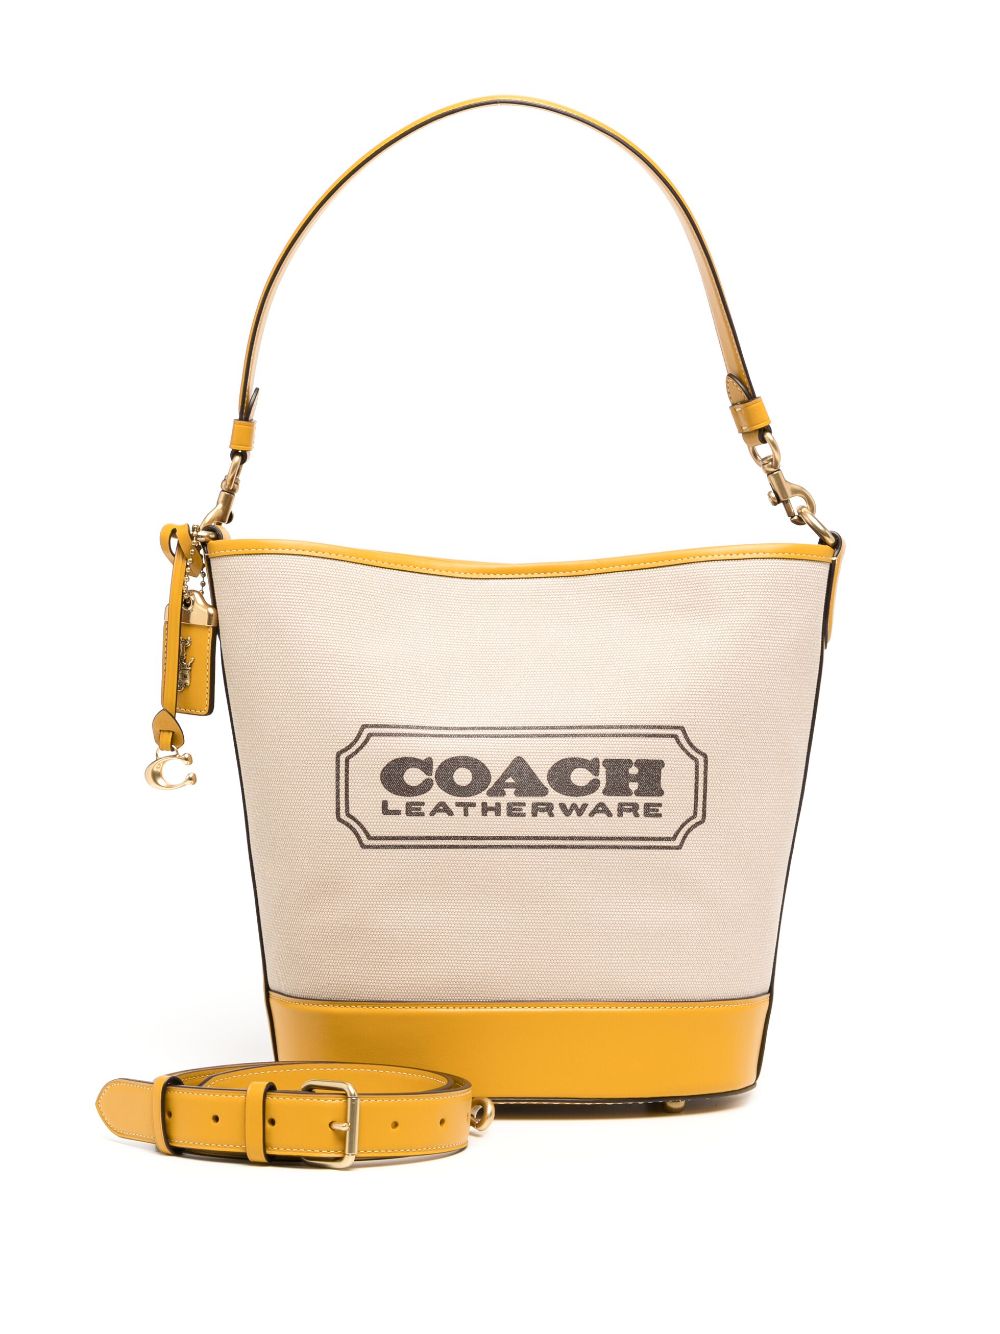 Coach Perforated Coach Bag Charm  Bag charm, Coach bags, Clothes